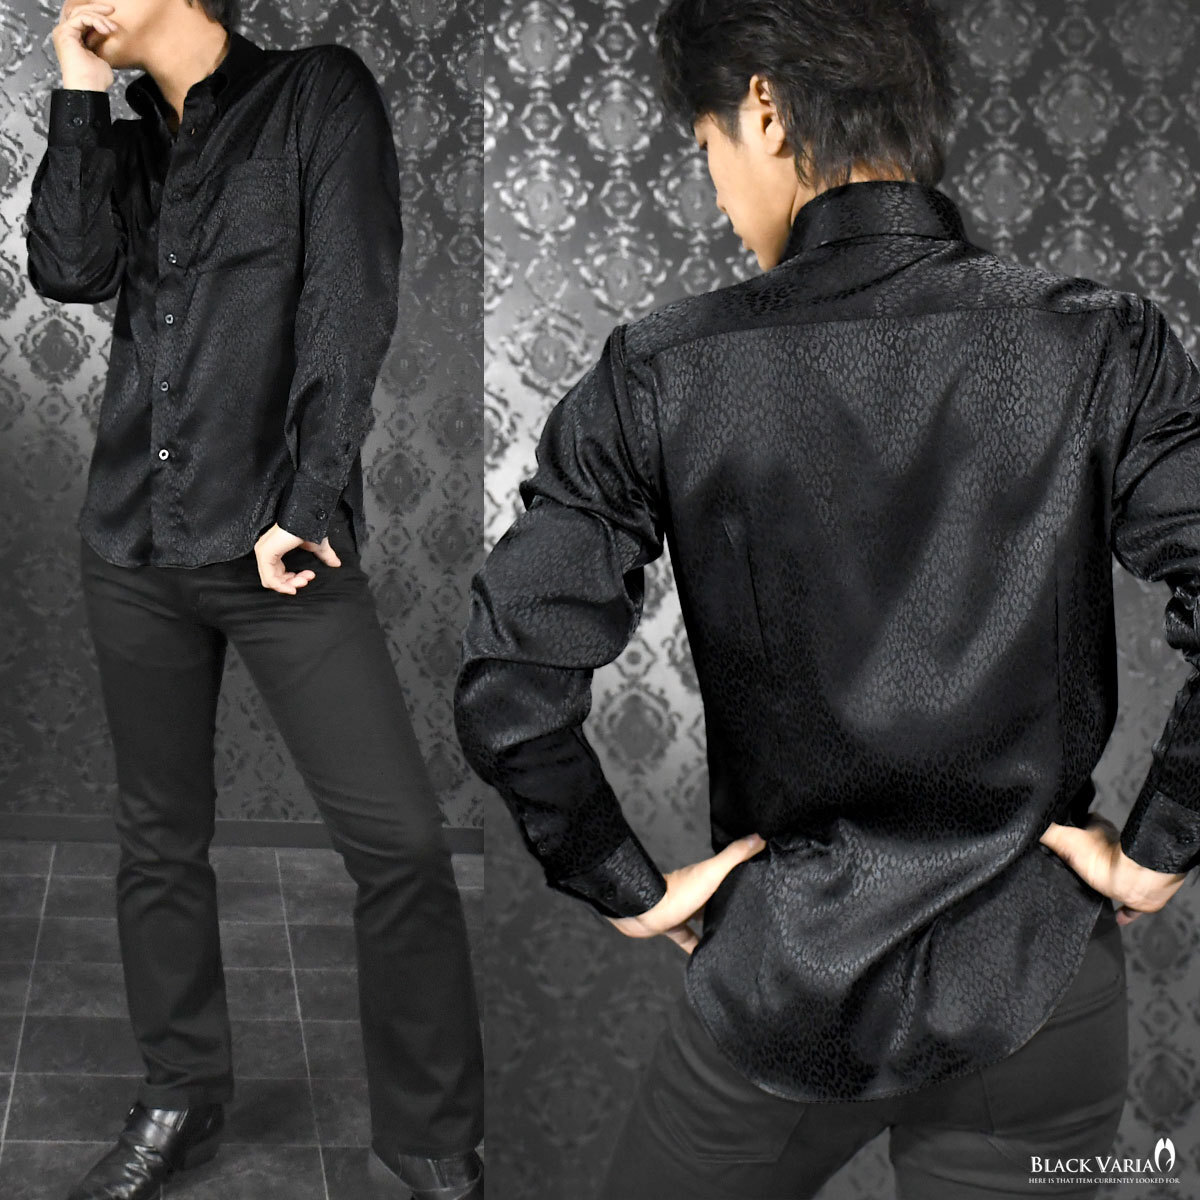 181710-bk BLACK VARIA ドゥエボットーニ ヒョウ柄 豹 ジャガード スナップダウン ドレスシャツ 日本製 メンズ(ブラック黒) L パーティー_画像3